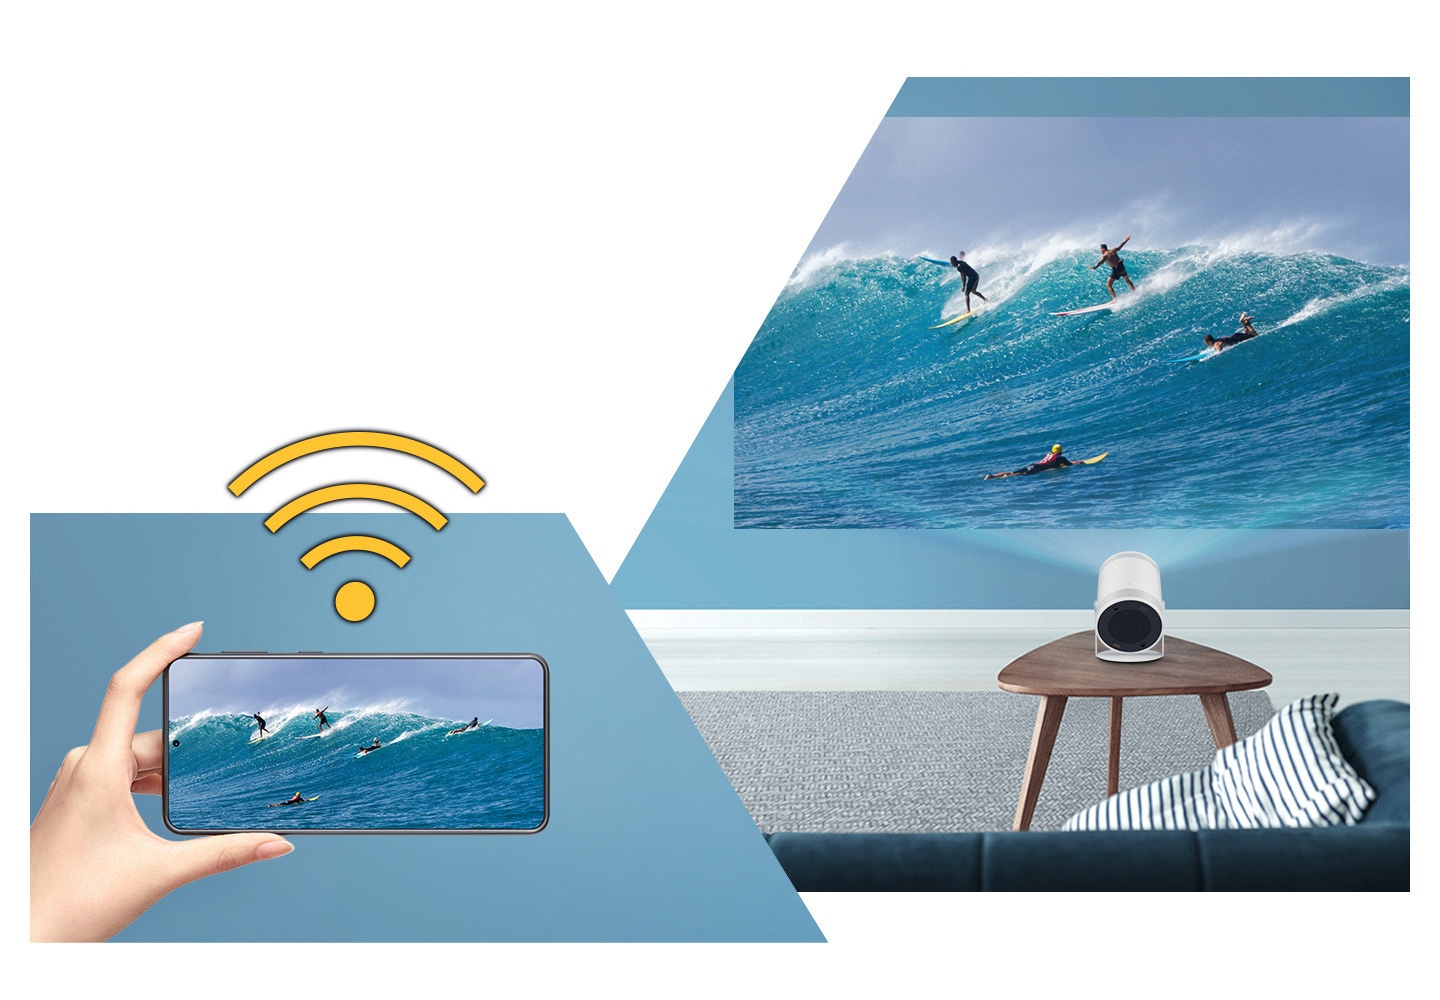 Το σήμα του Wi-Fi πάνω από ένα χέρι που κρατά ένα κινητό. Μια εικόνα surf στη συσκευή αντικατοπτρίζεται στην μεγάλη οθόνη του The Freestyle.